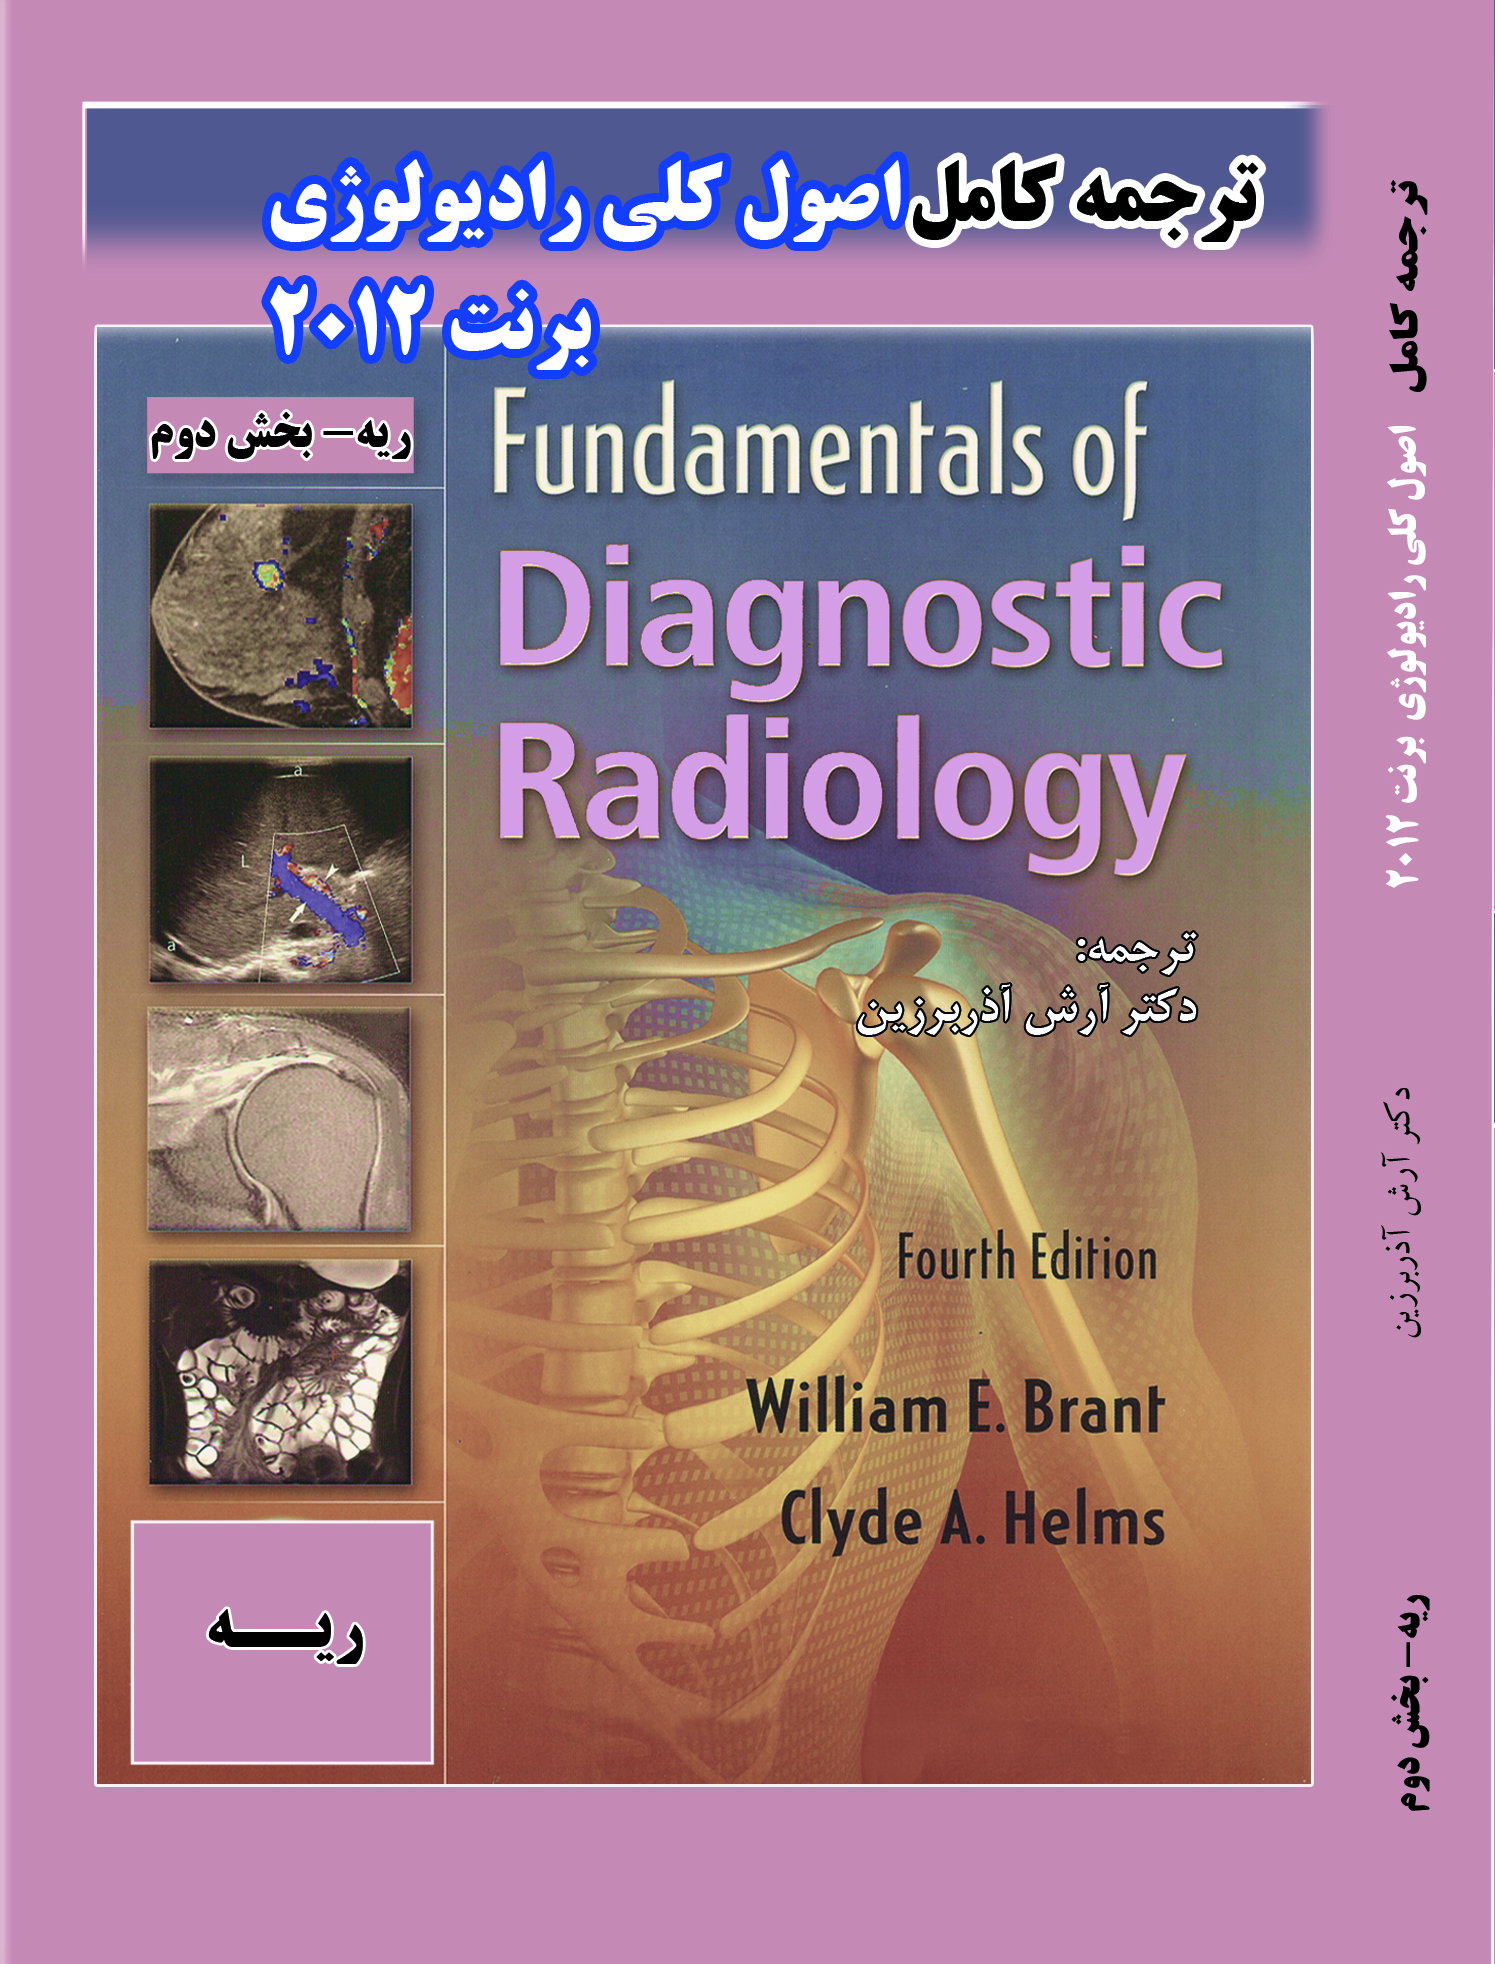 تالیفات دکتر آرش آذربرین | سونوگرافی و رادیولوژی قلهک | رادیولوژی | سونوگرافی | سونوگرافی قلهک |